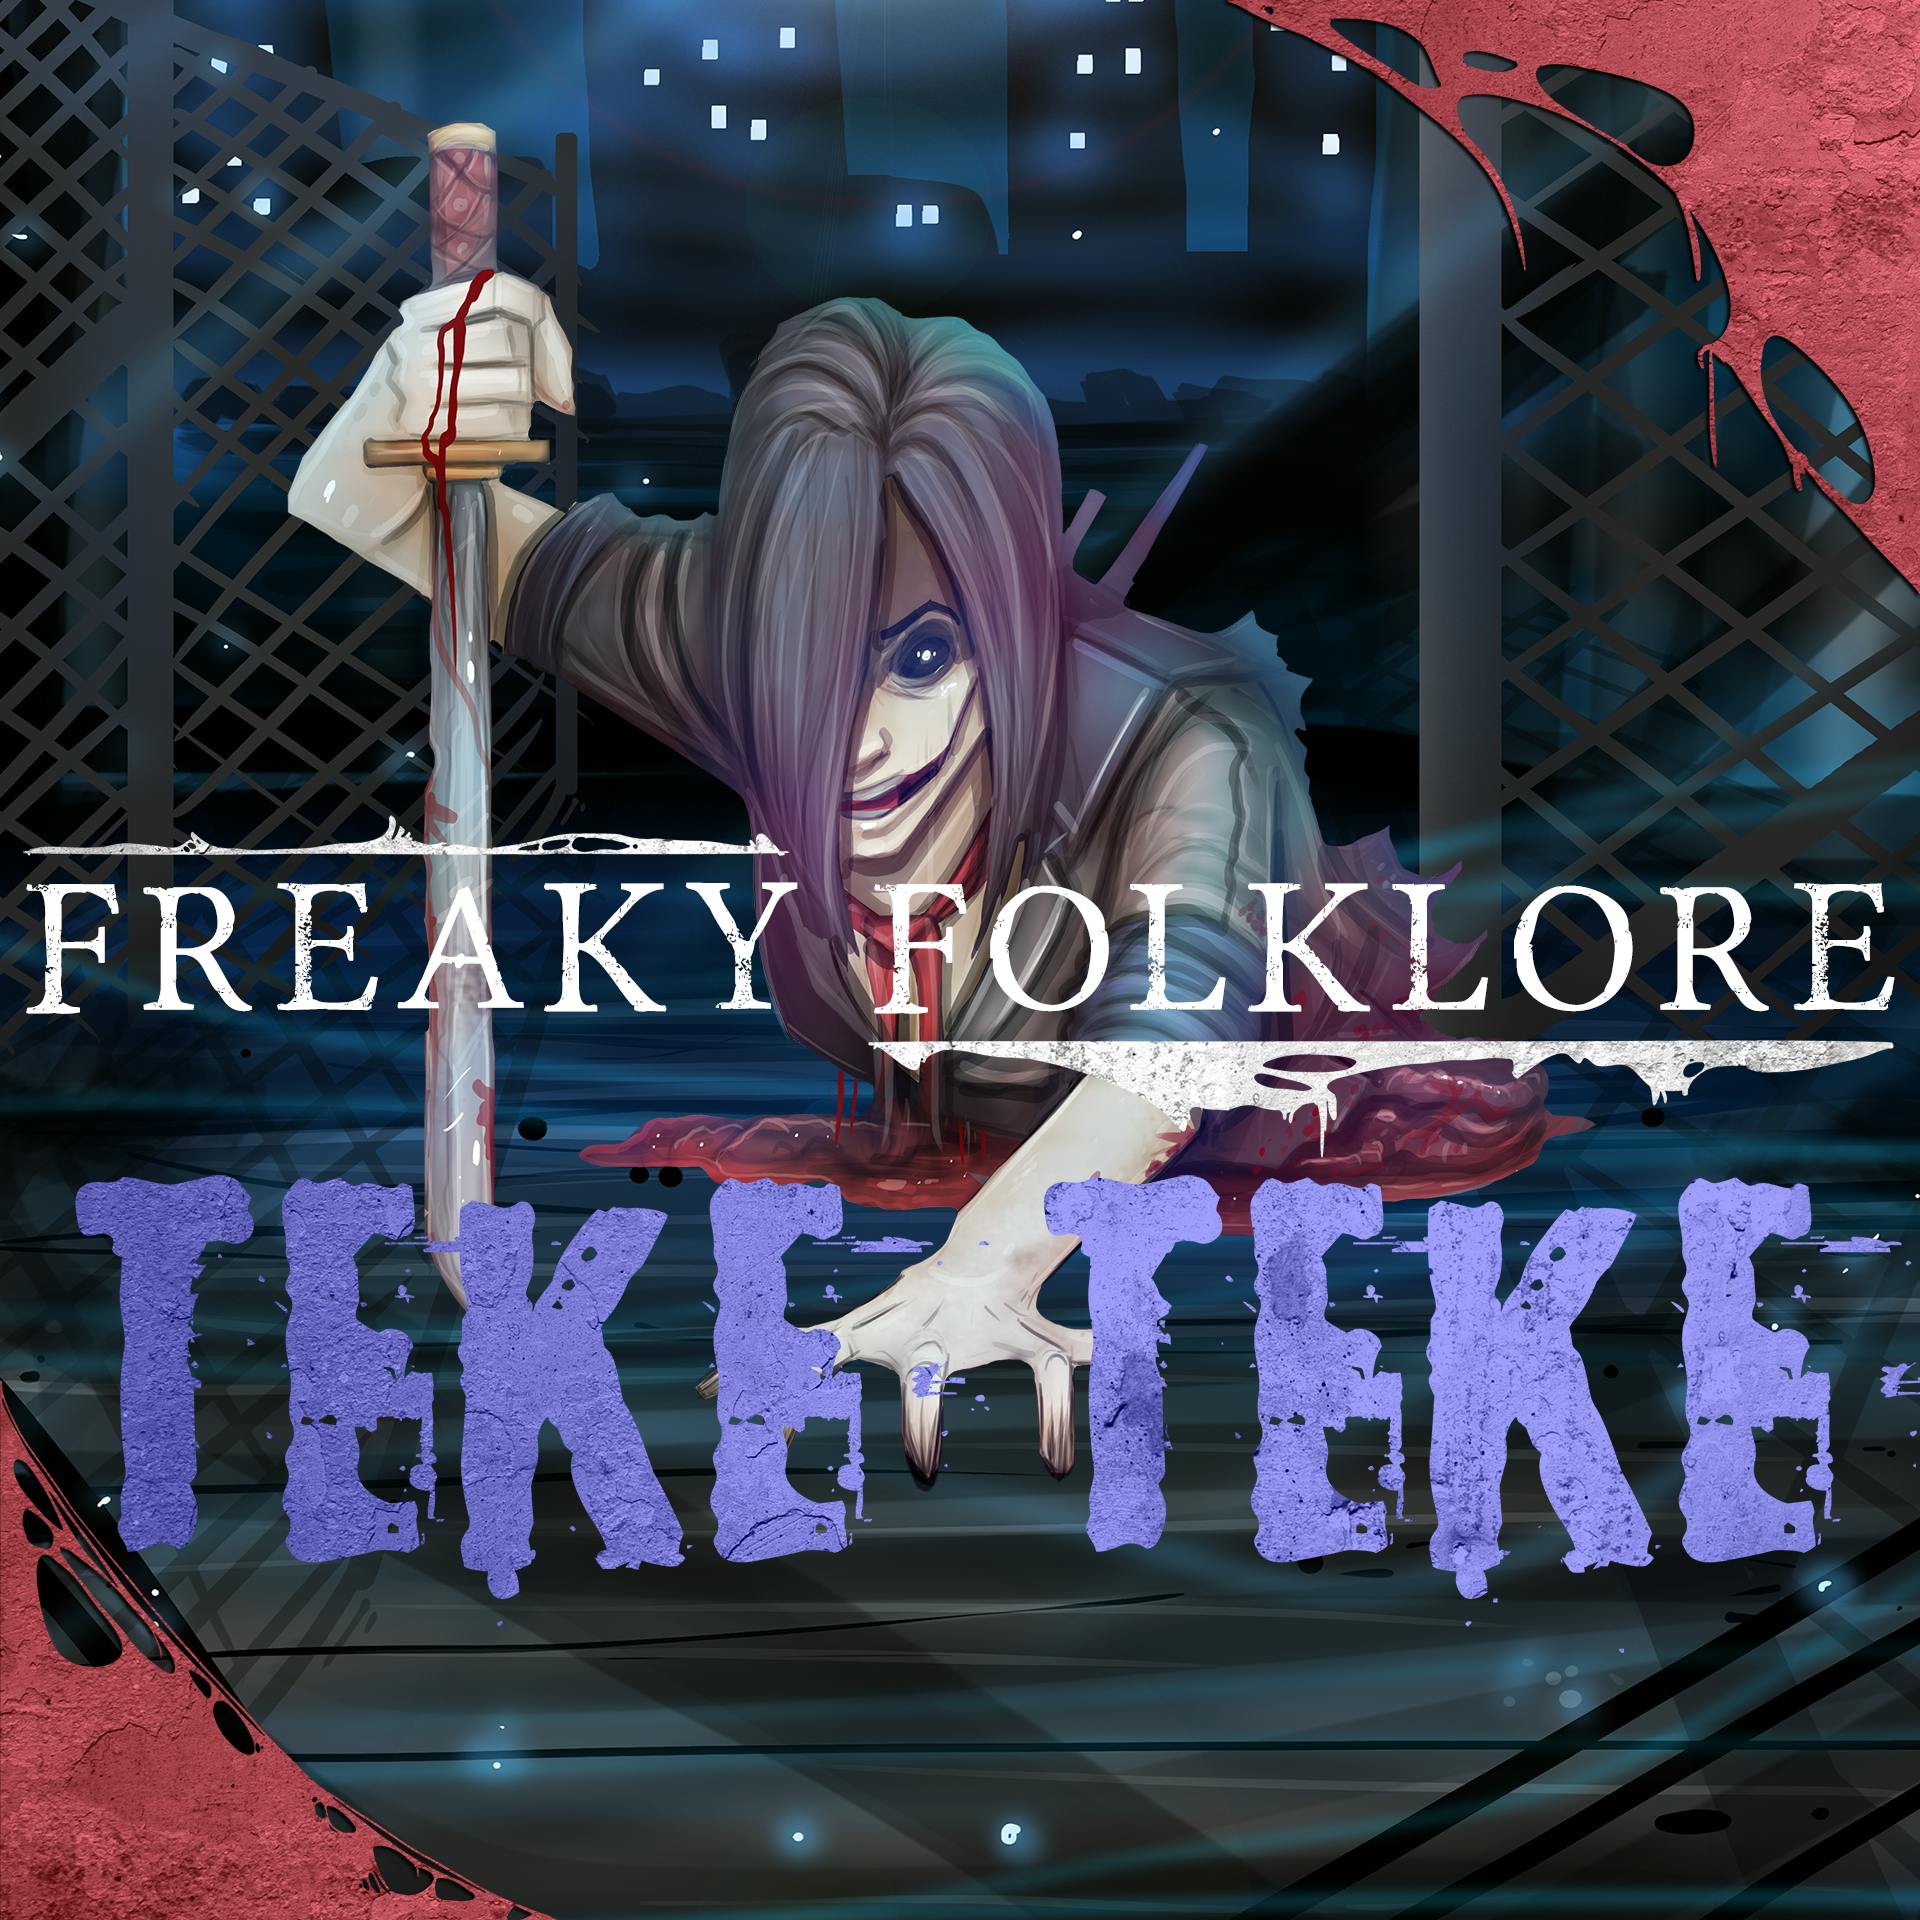 Teke Teke - The Demon That Will Cut You in Half